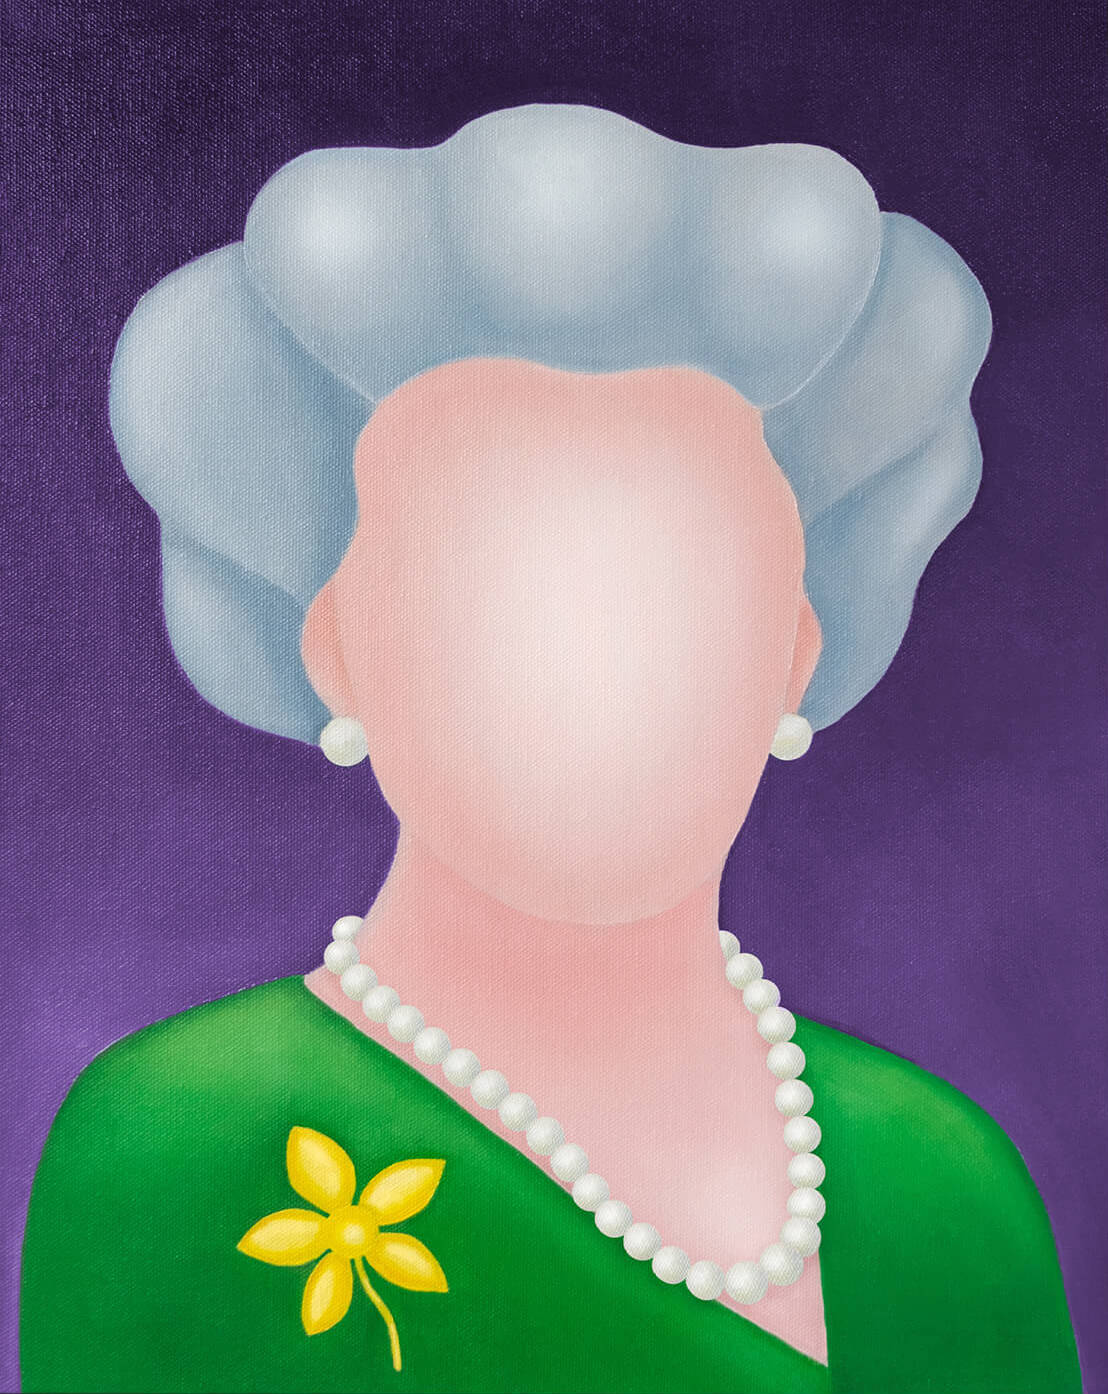 HM Queen Elizabeth II (2022)